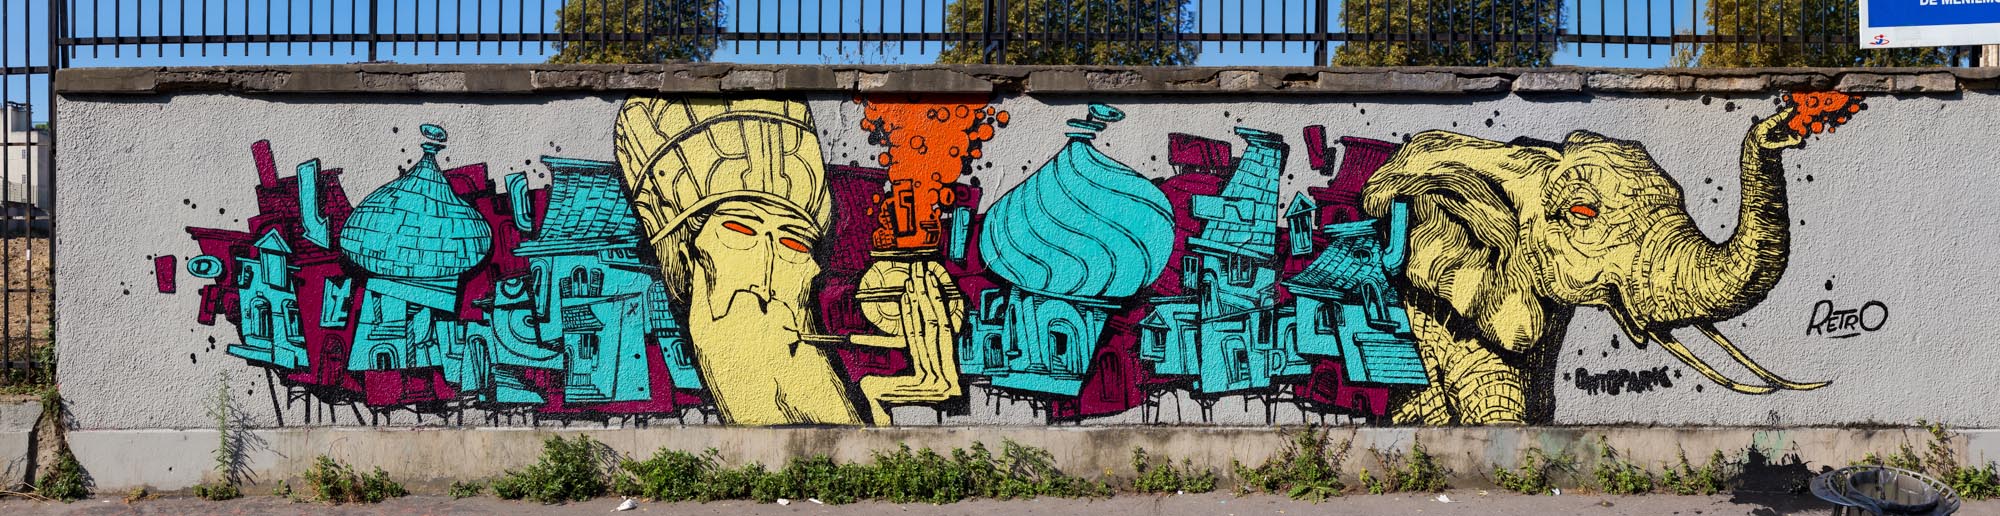 Rétro graffitism - Septembre 2016